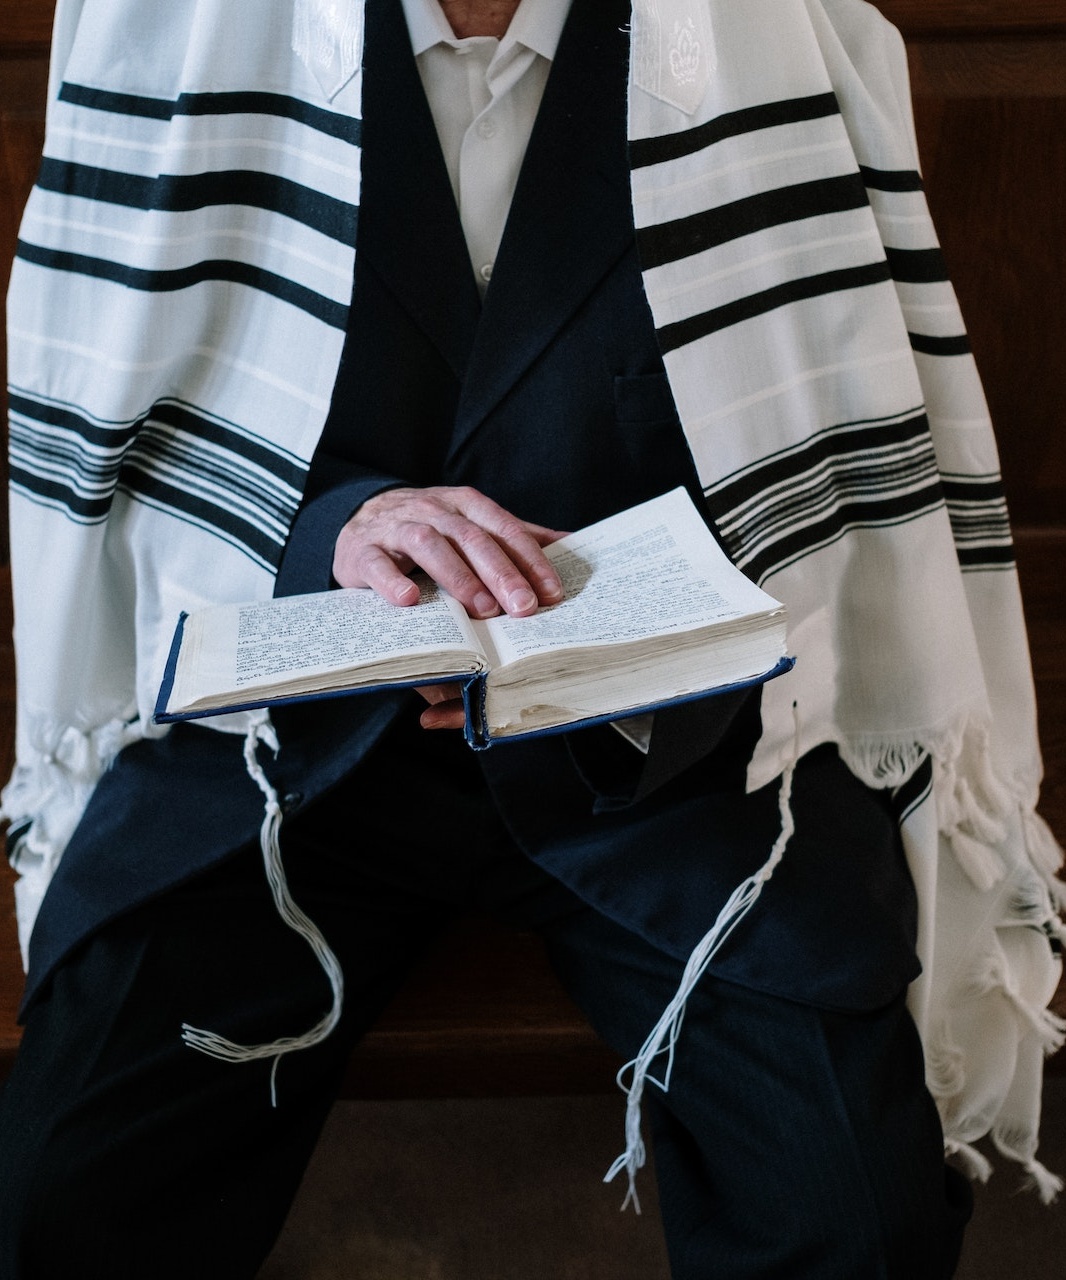 Yom Kippur services